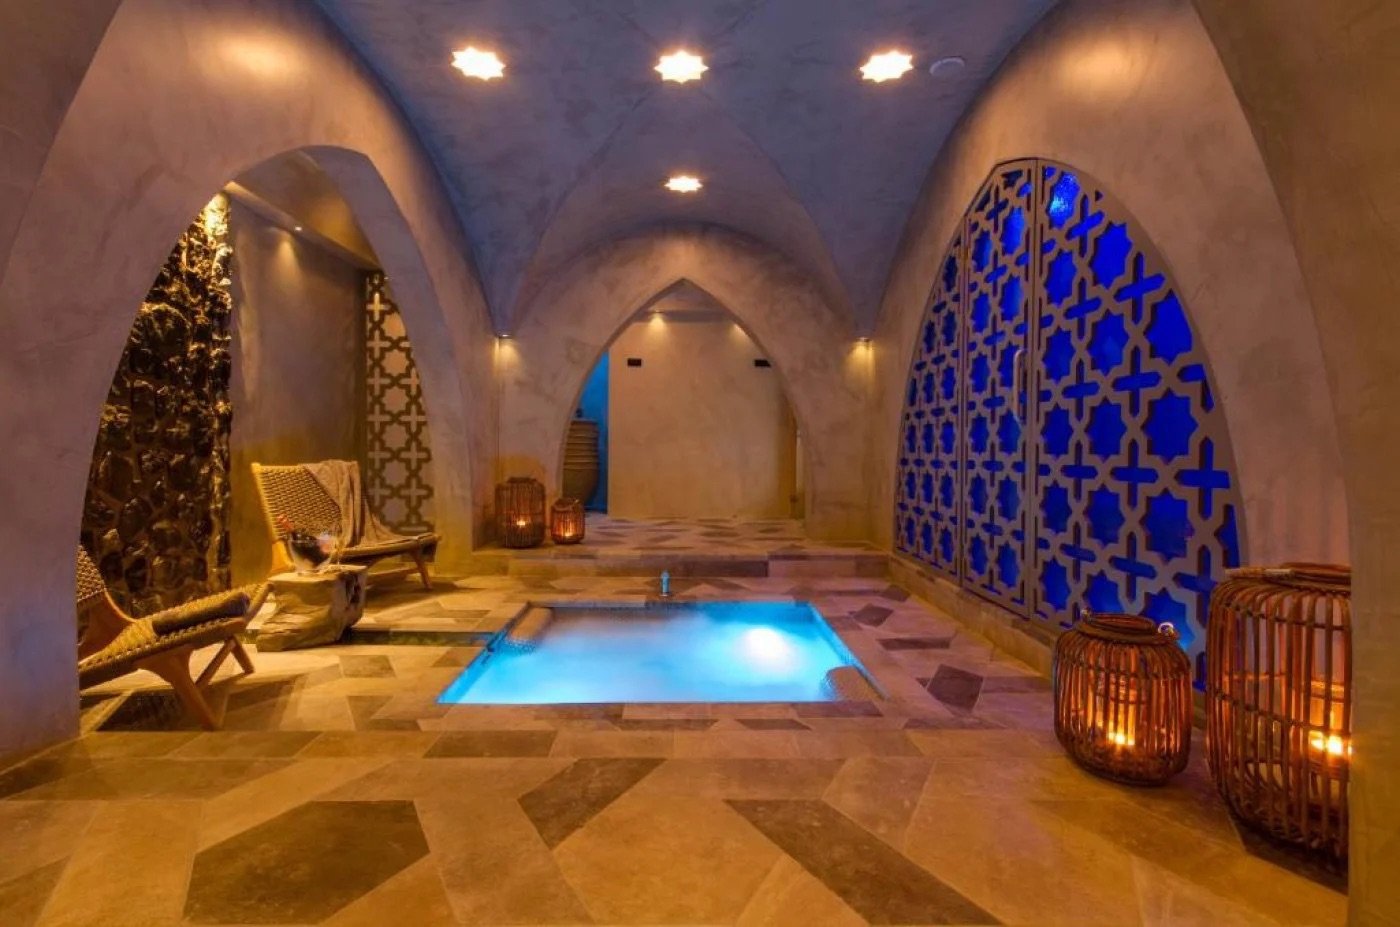 Hotel con baño turco en Alicante